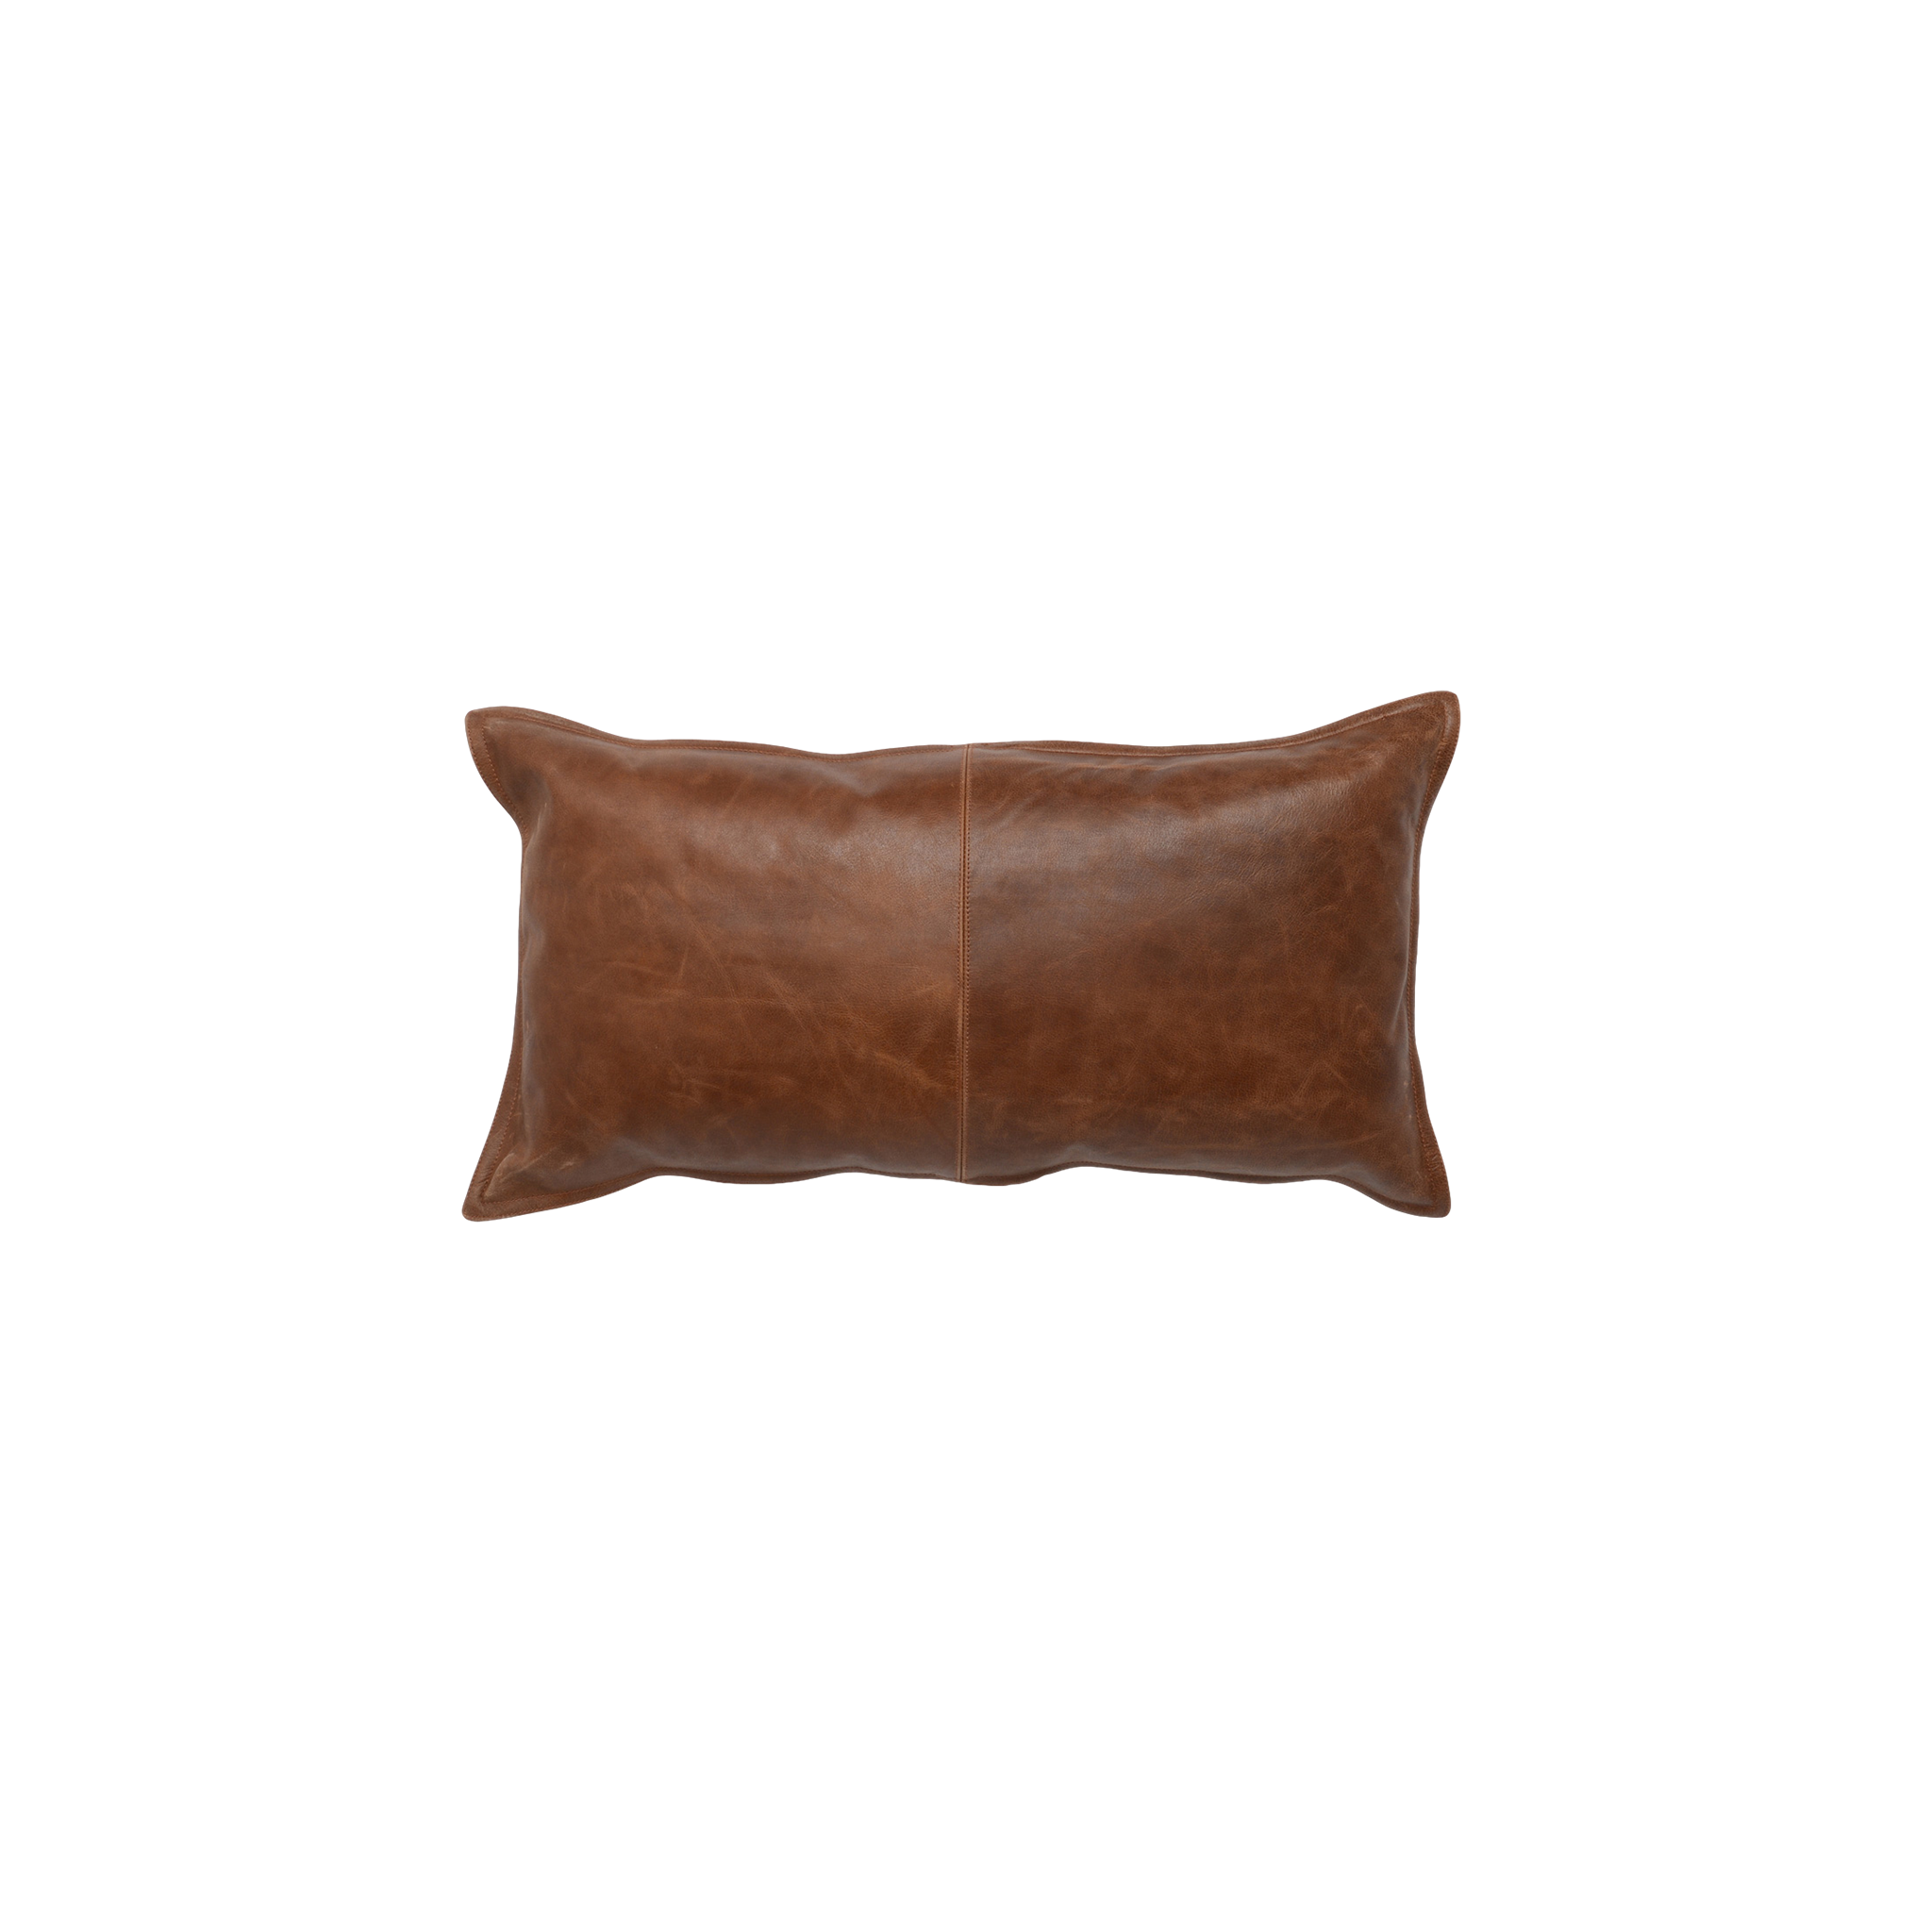 Kaiden Lumbar Pillow